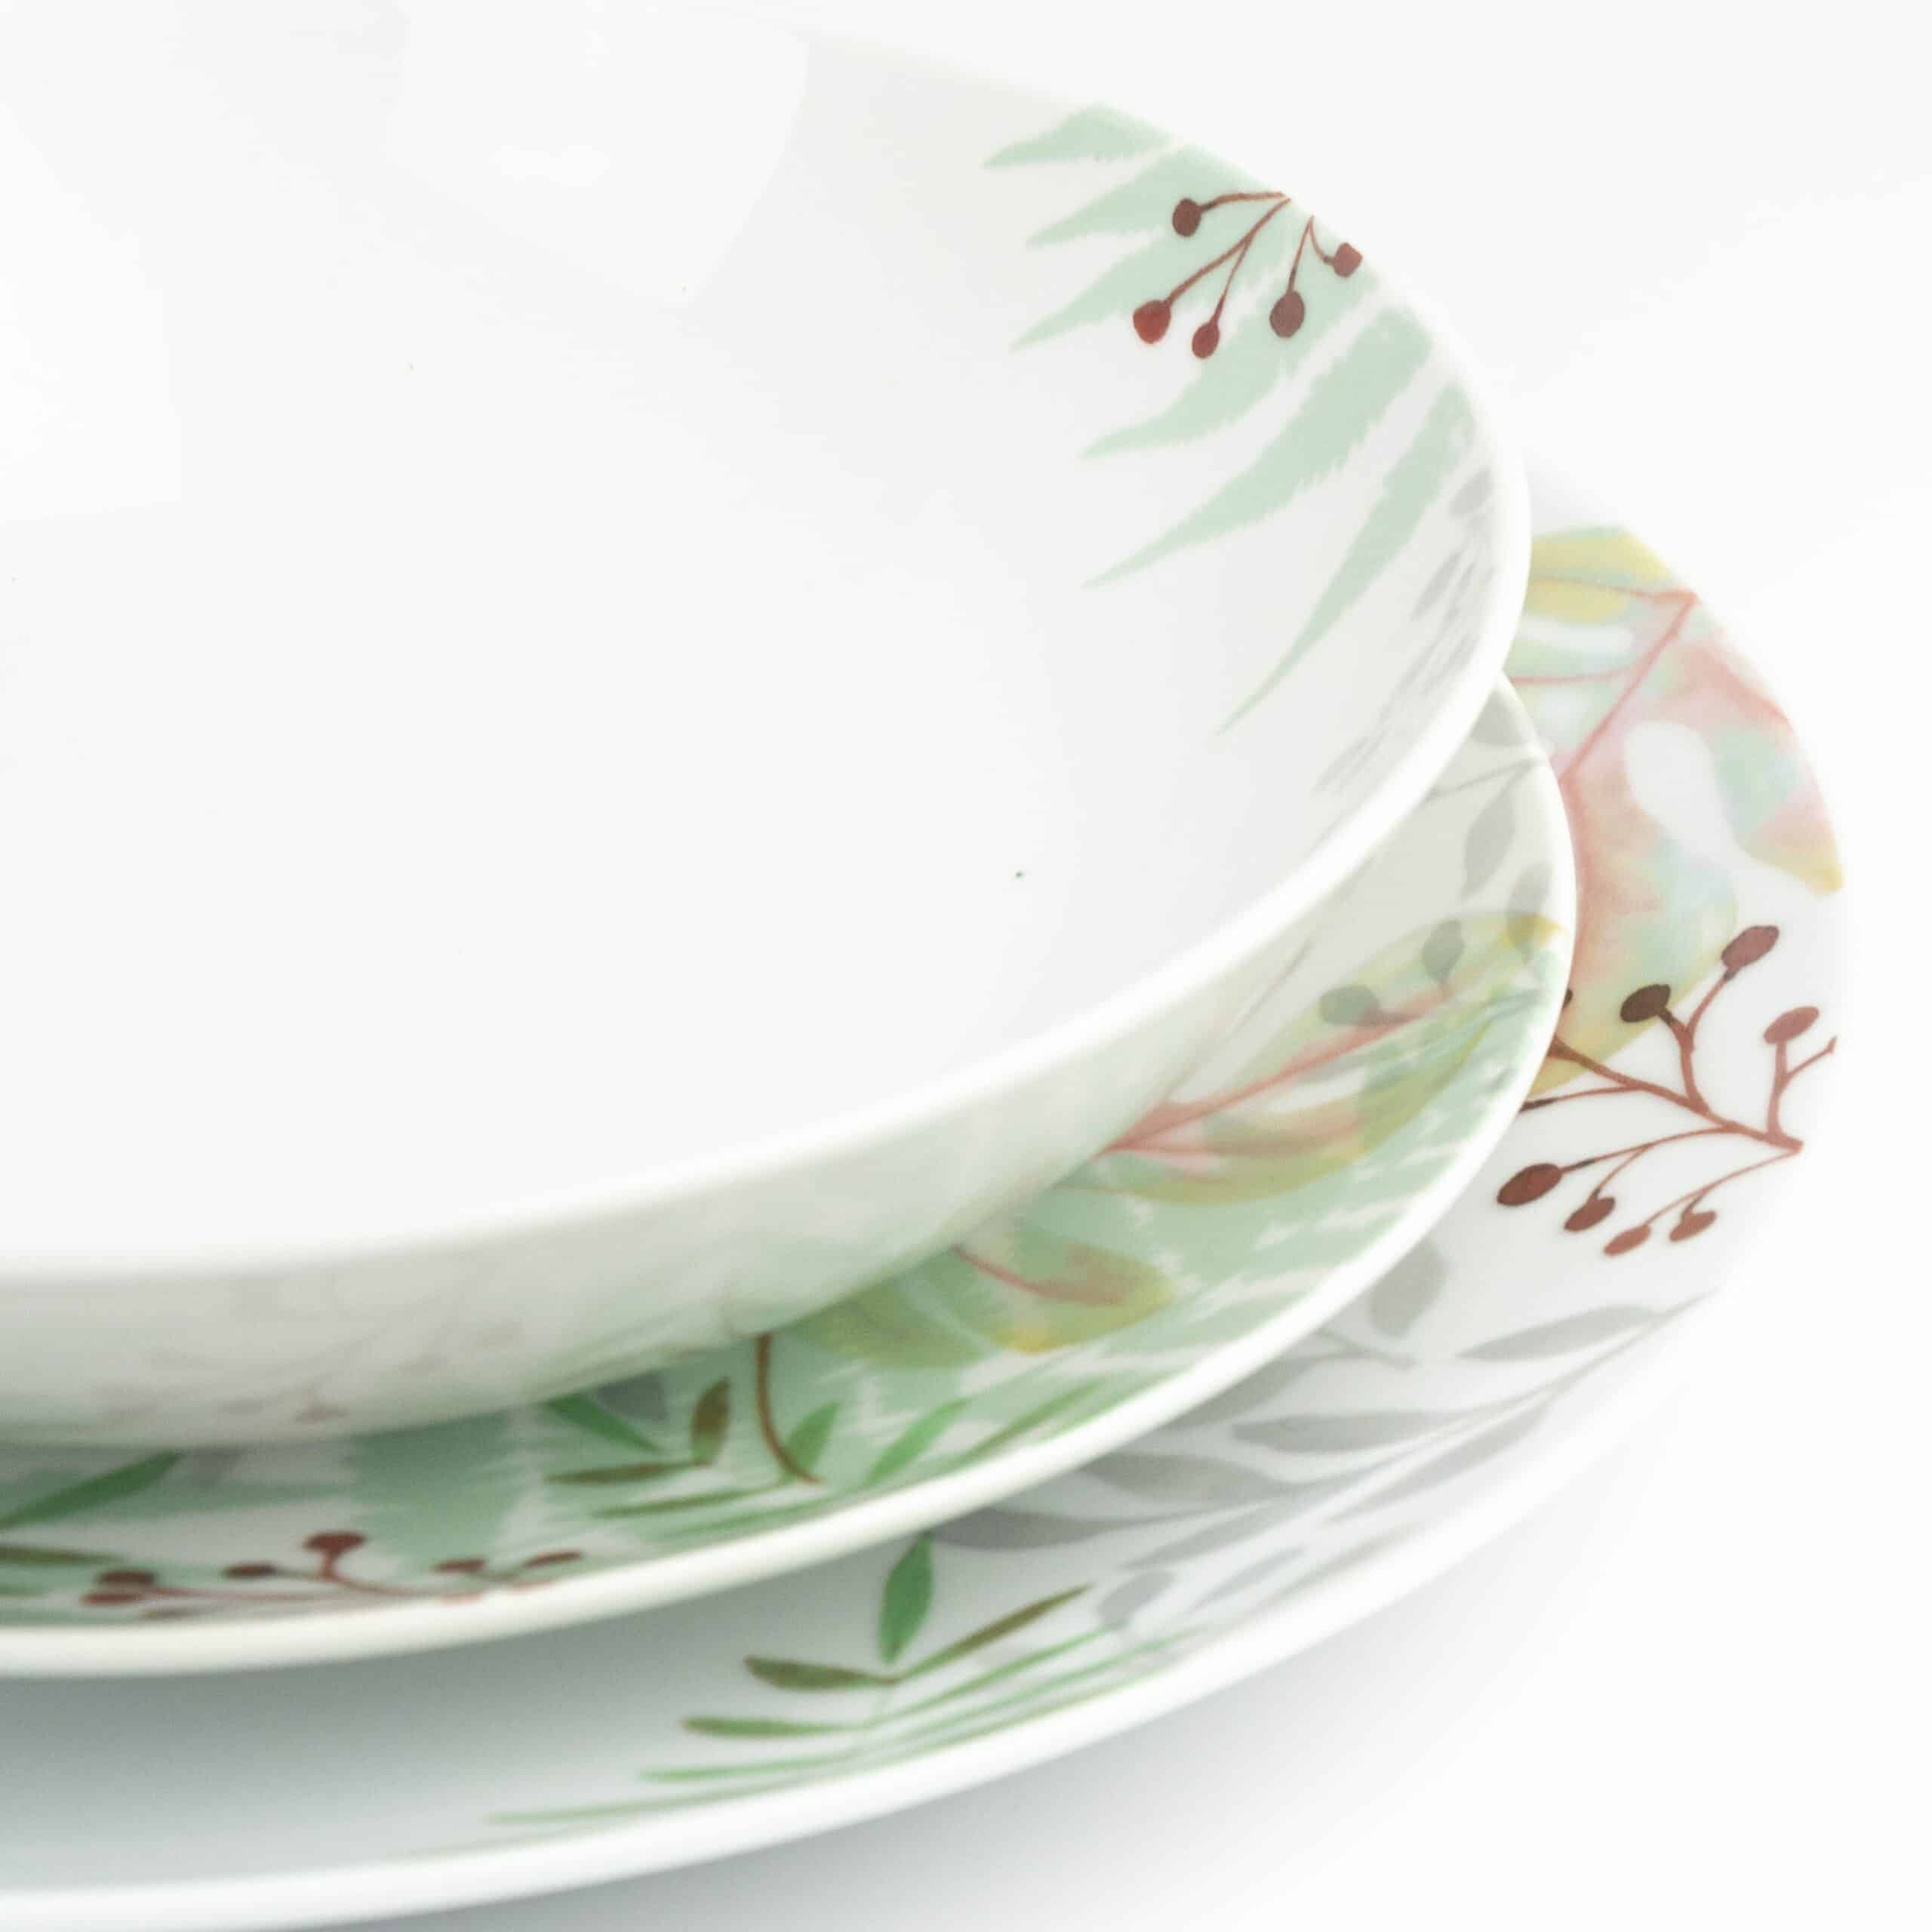 Servizio 18 piatti Tognana Costarica bianco, verde in porcellana stile  tognana